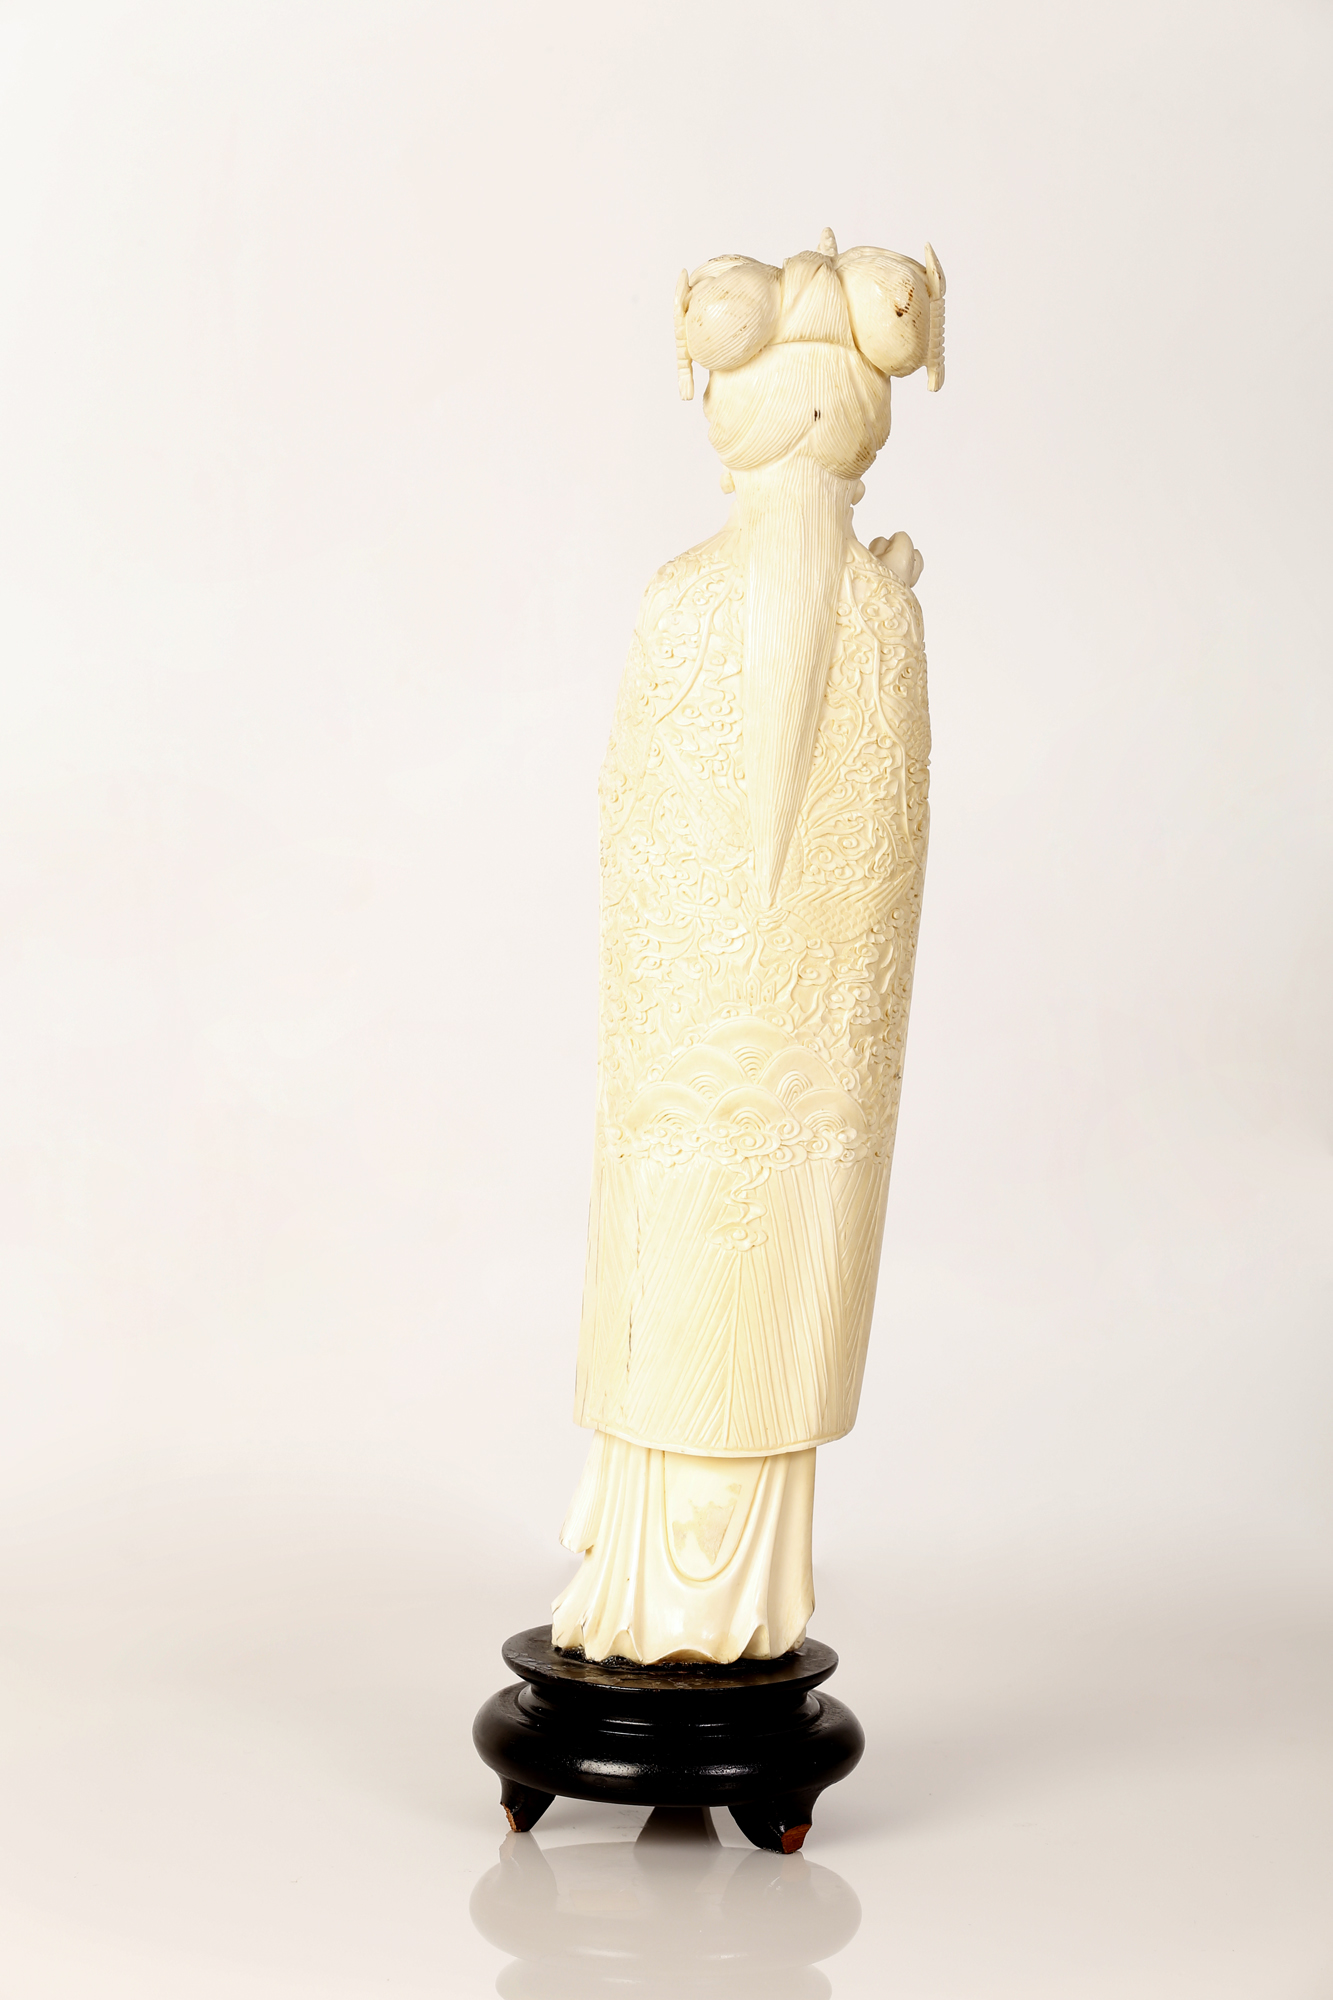 Impressive Guanyin-shaped Chinese Bone Figurine - Image 2 of 2